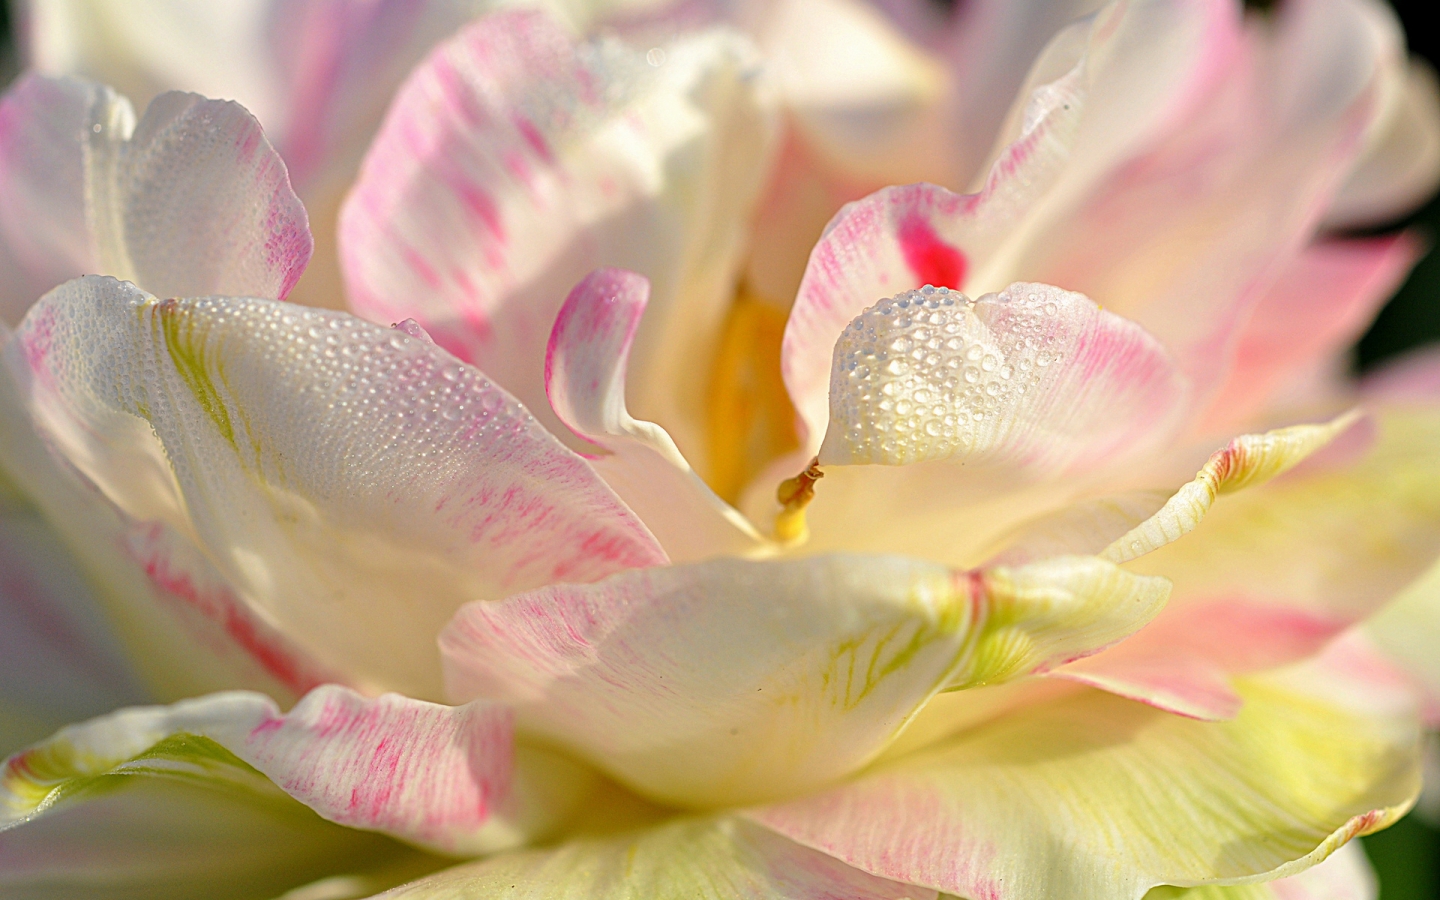 Magnolia Petals for 1440 x 900 widescreen resolution